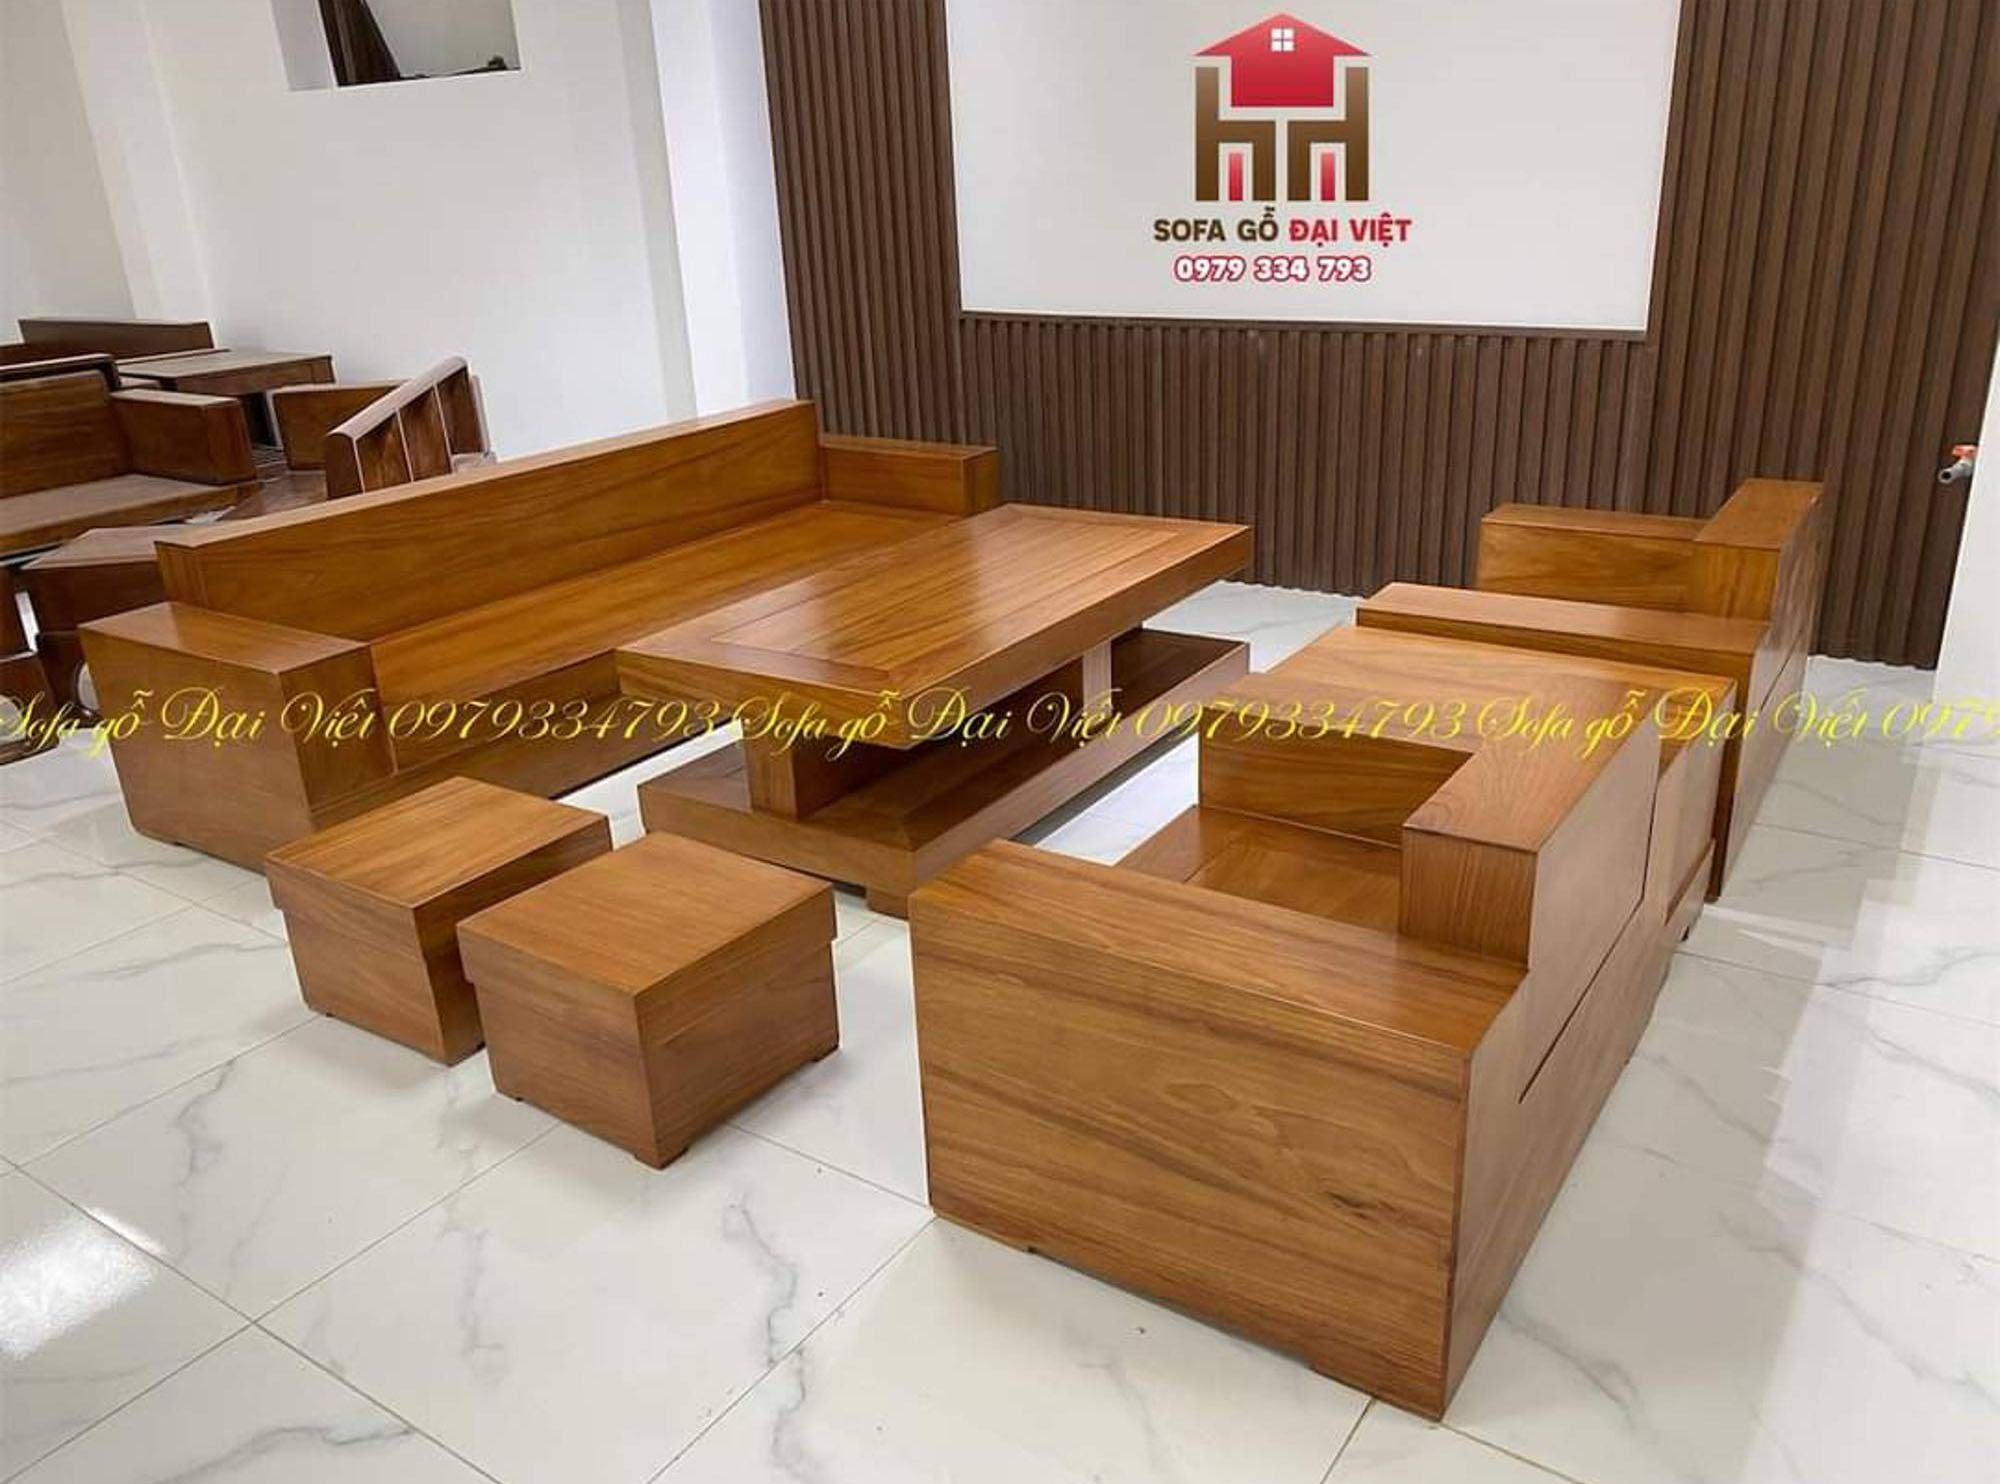 Sofa gỗ sồi đỏ - Bộ bàn sofa gỗ tự nhiên trẻ trung